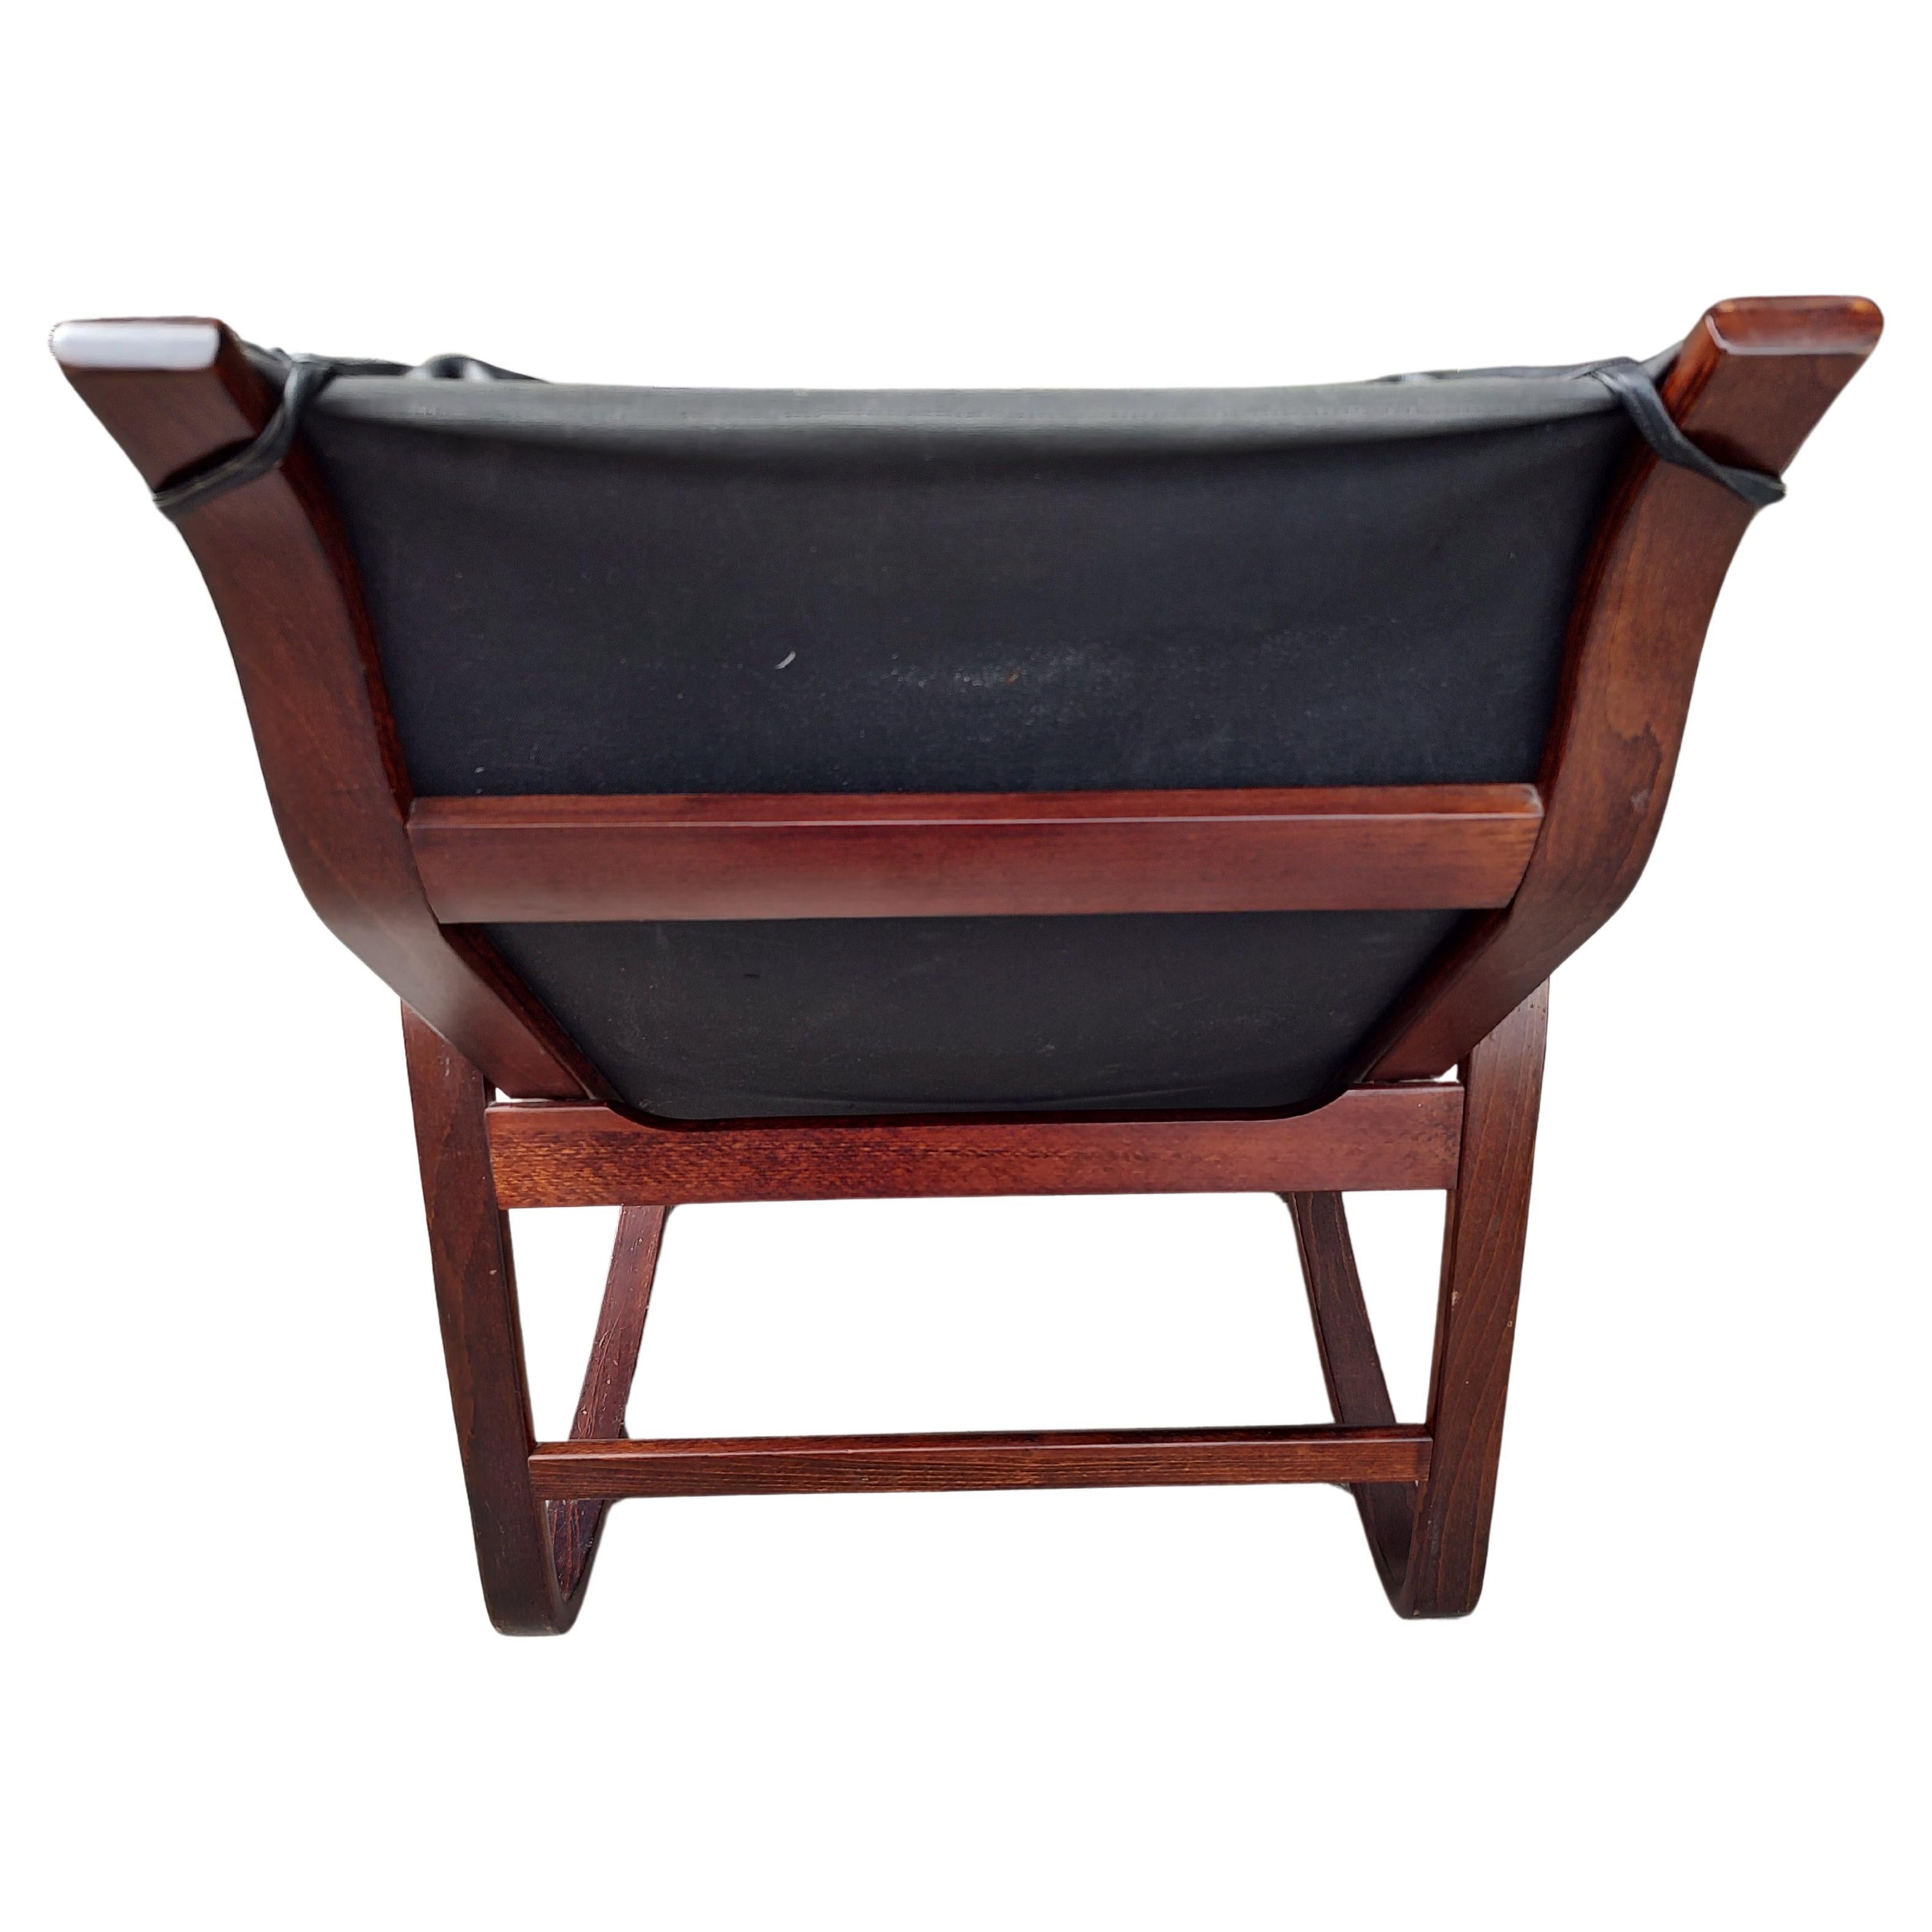 Fabuleux fauteuil à bascule en bois courbé, en bois de rose et cuir noir, par Ingmar Relling pour Westnofa. Très confortable et en excellent état vintage avec une usure minimale.